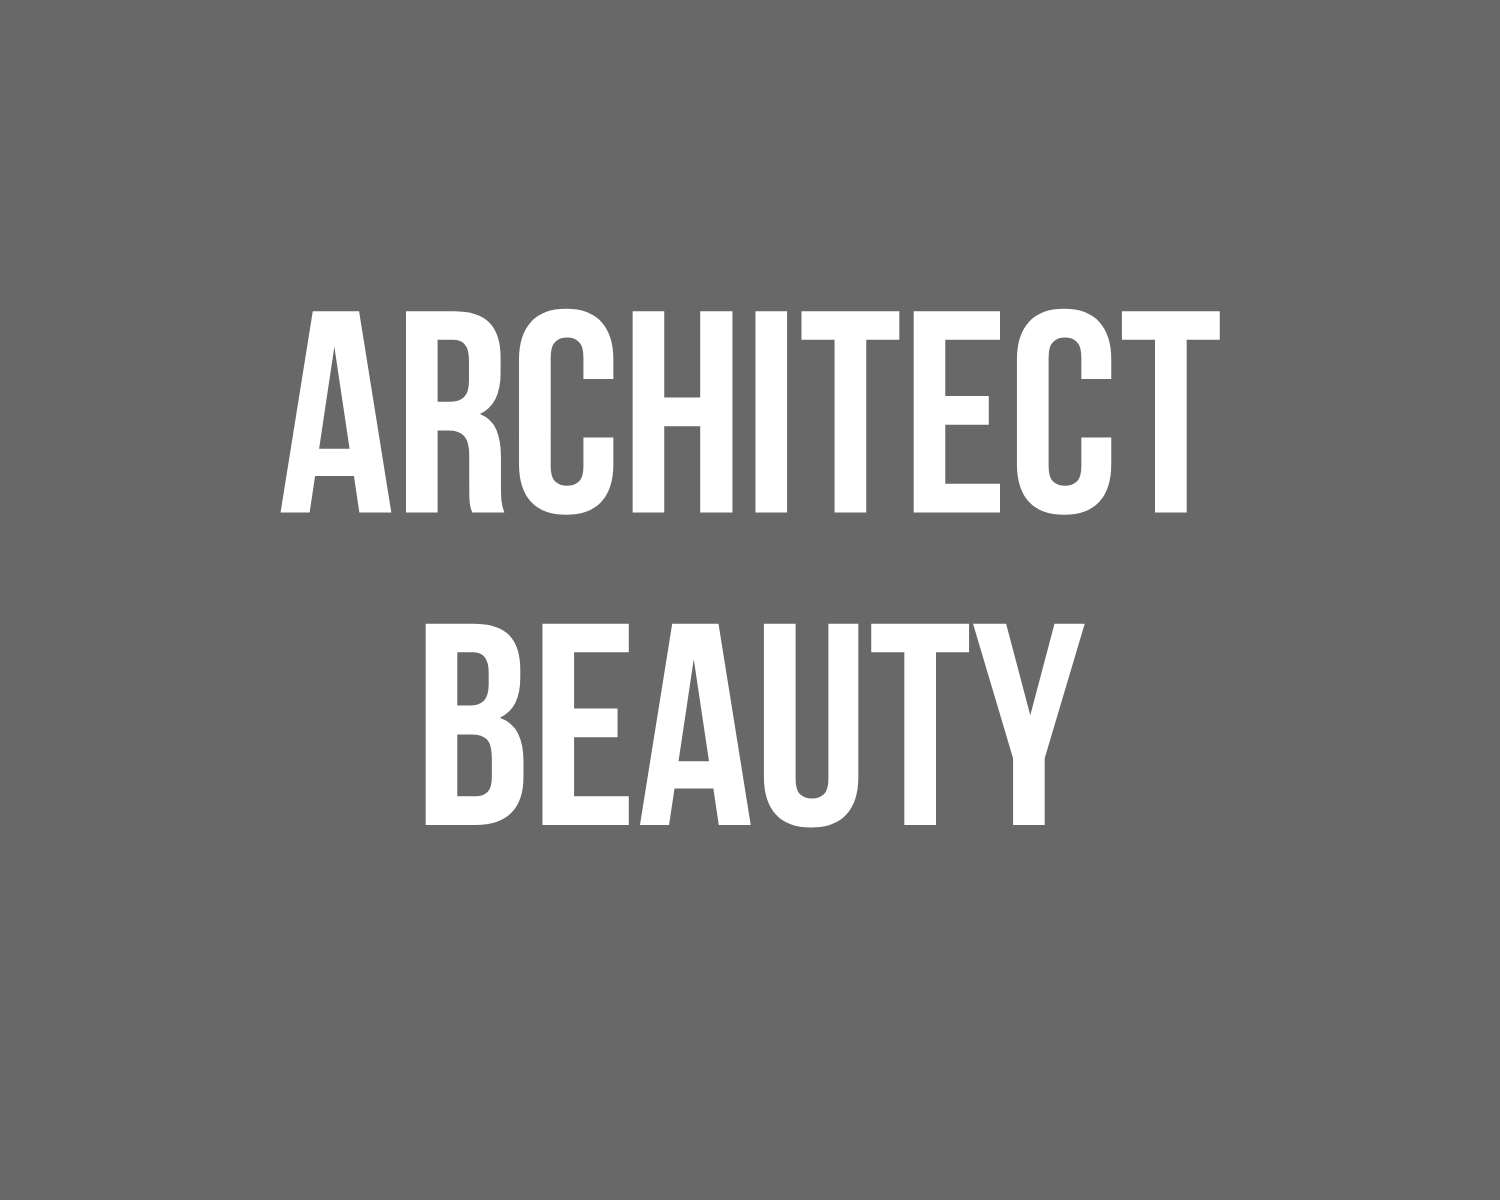 Architect Beauty